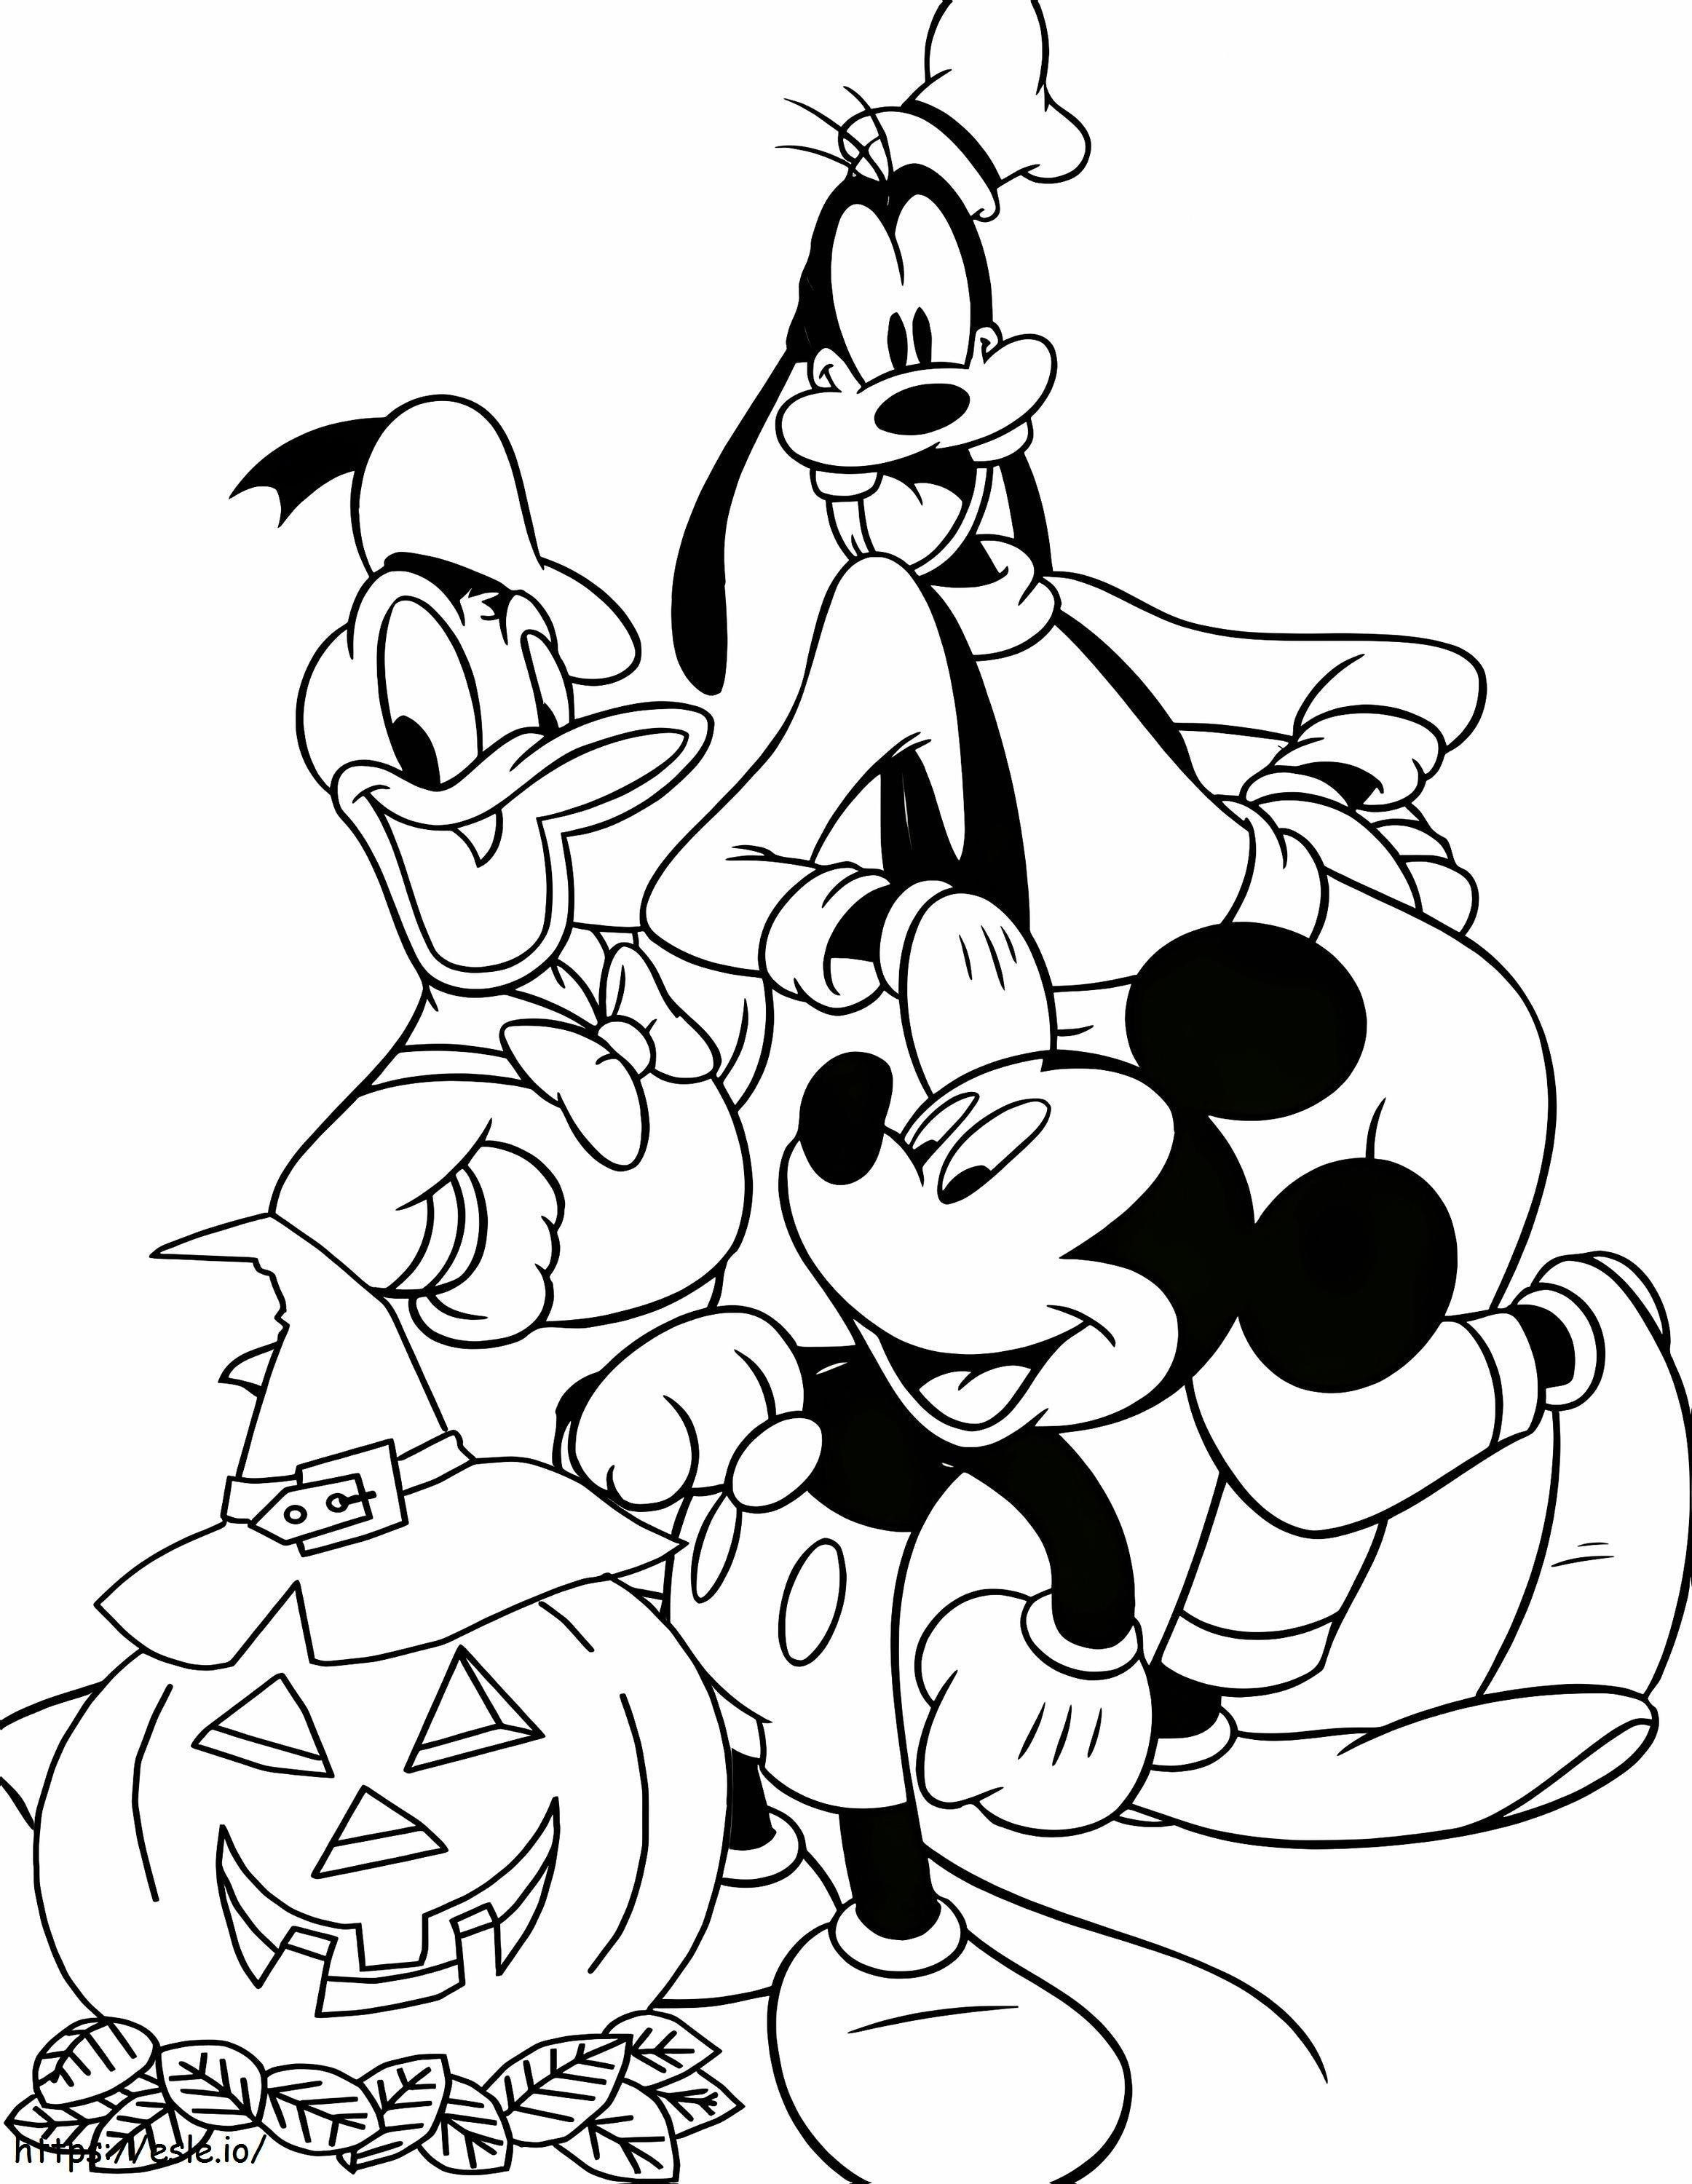 Mickey und seine Freunde an Halloween ausmalbilder